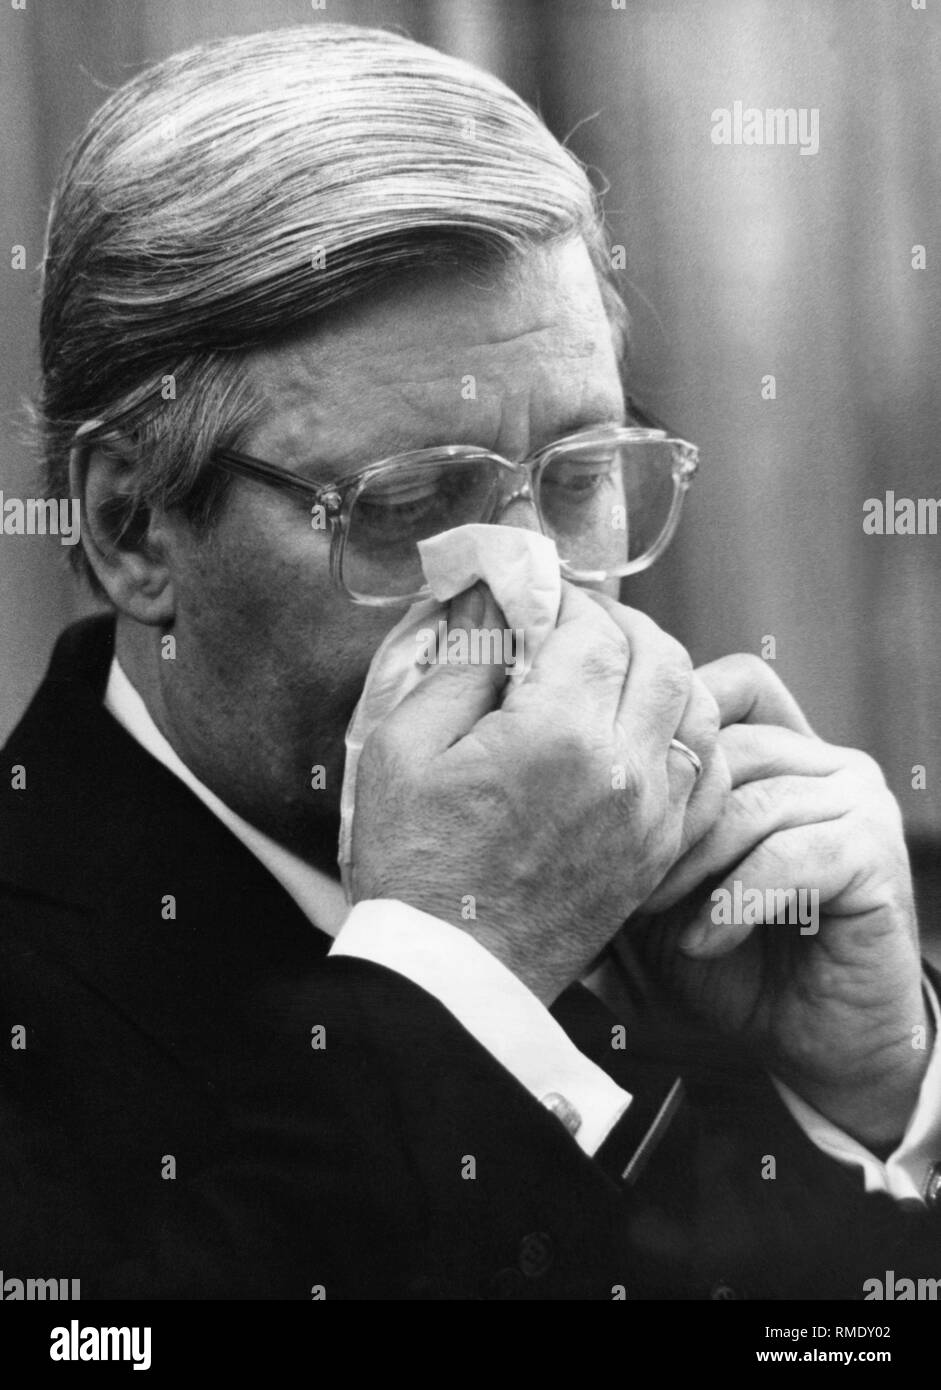 Chancellor Helmut Schmidt blows his nose. Stock Photo